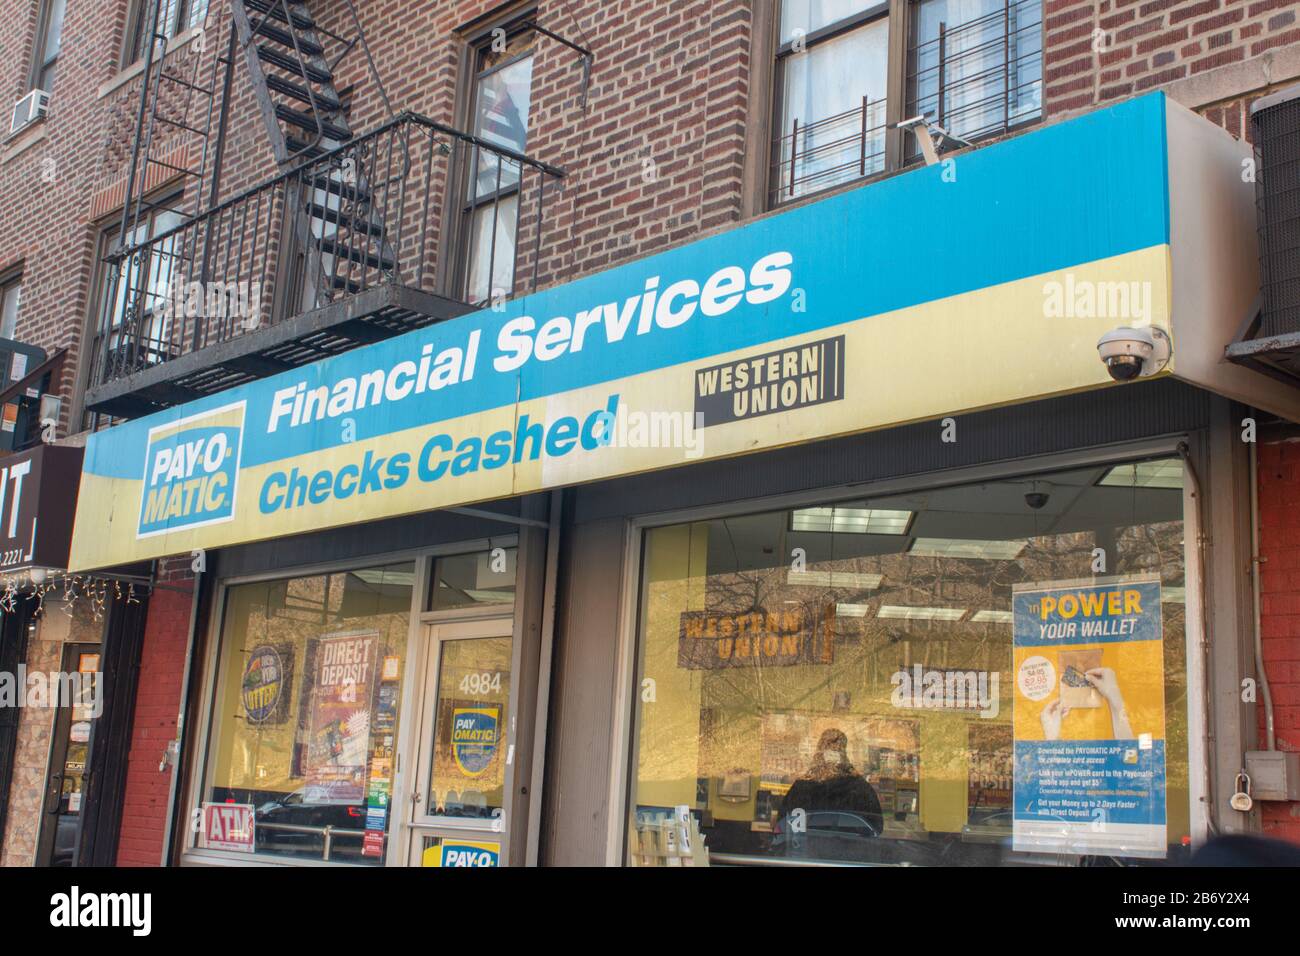 Tienda frente a un quiosco de cobro de cheques Payomatic en Inwood, Manhattan, Nueva York. Proporciona transacciones financieras para personas sin cuentas bancarias. Foto de stock